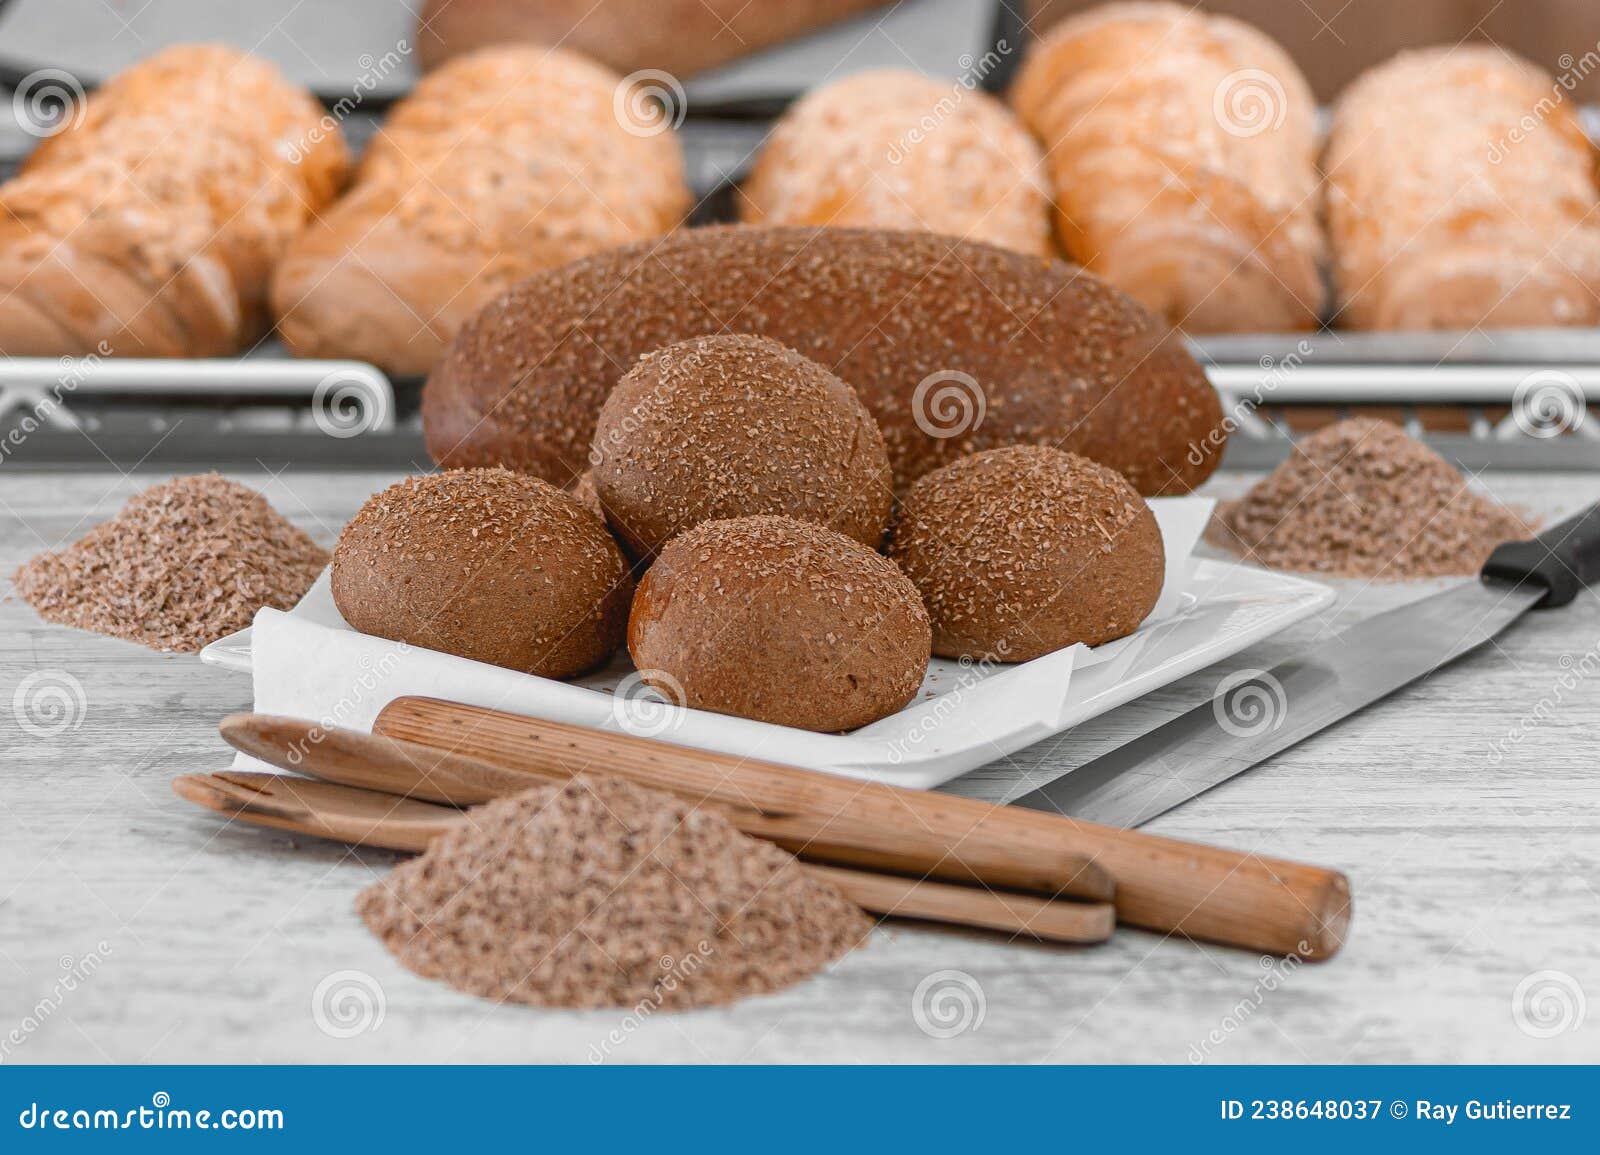 pan integral con avena para dieta